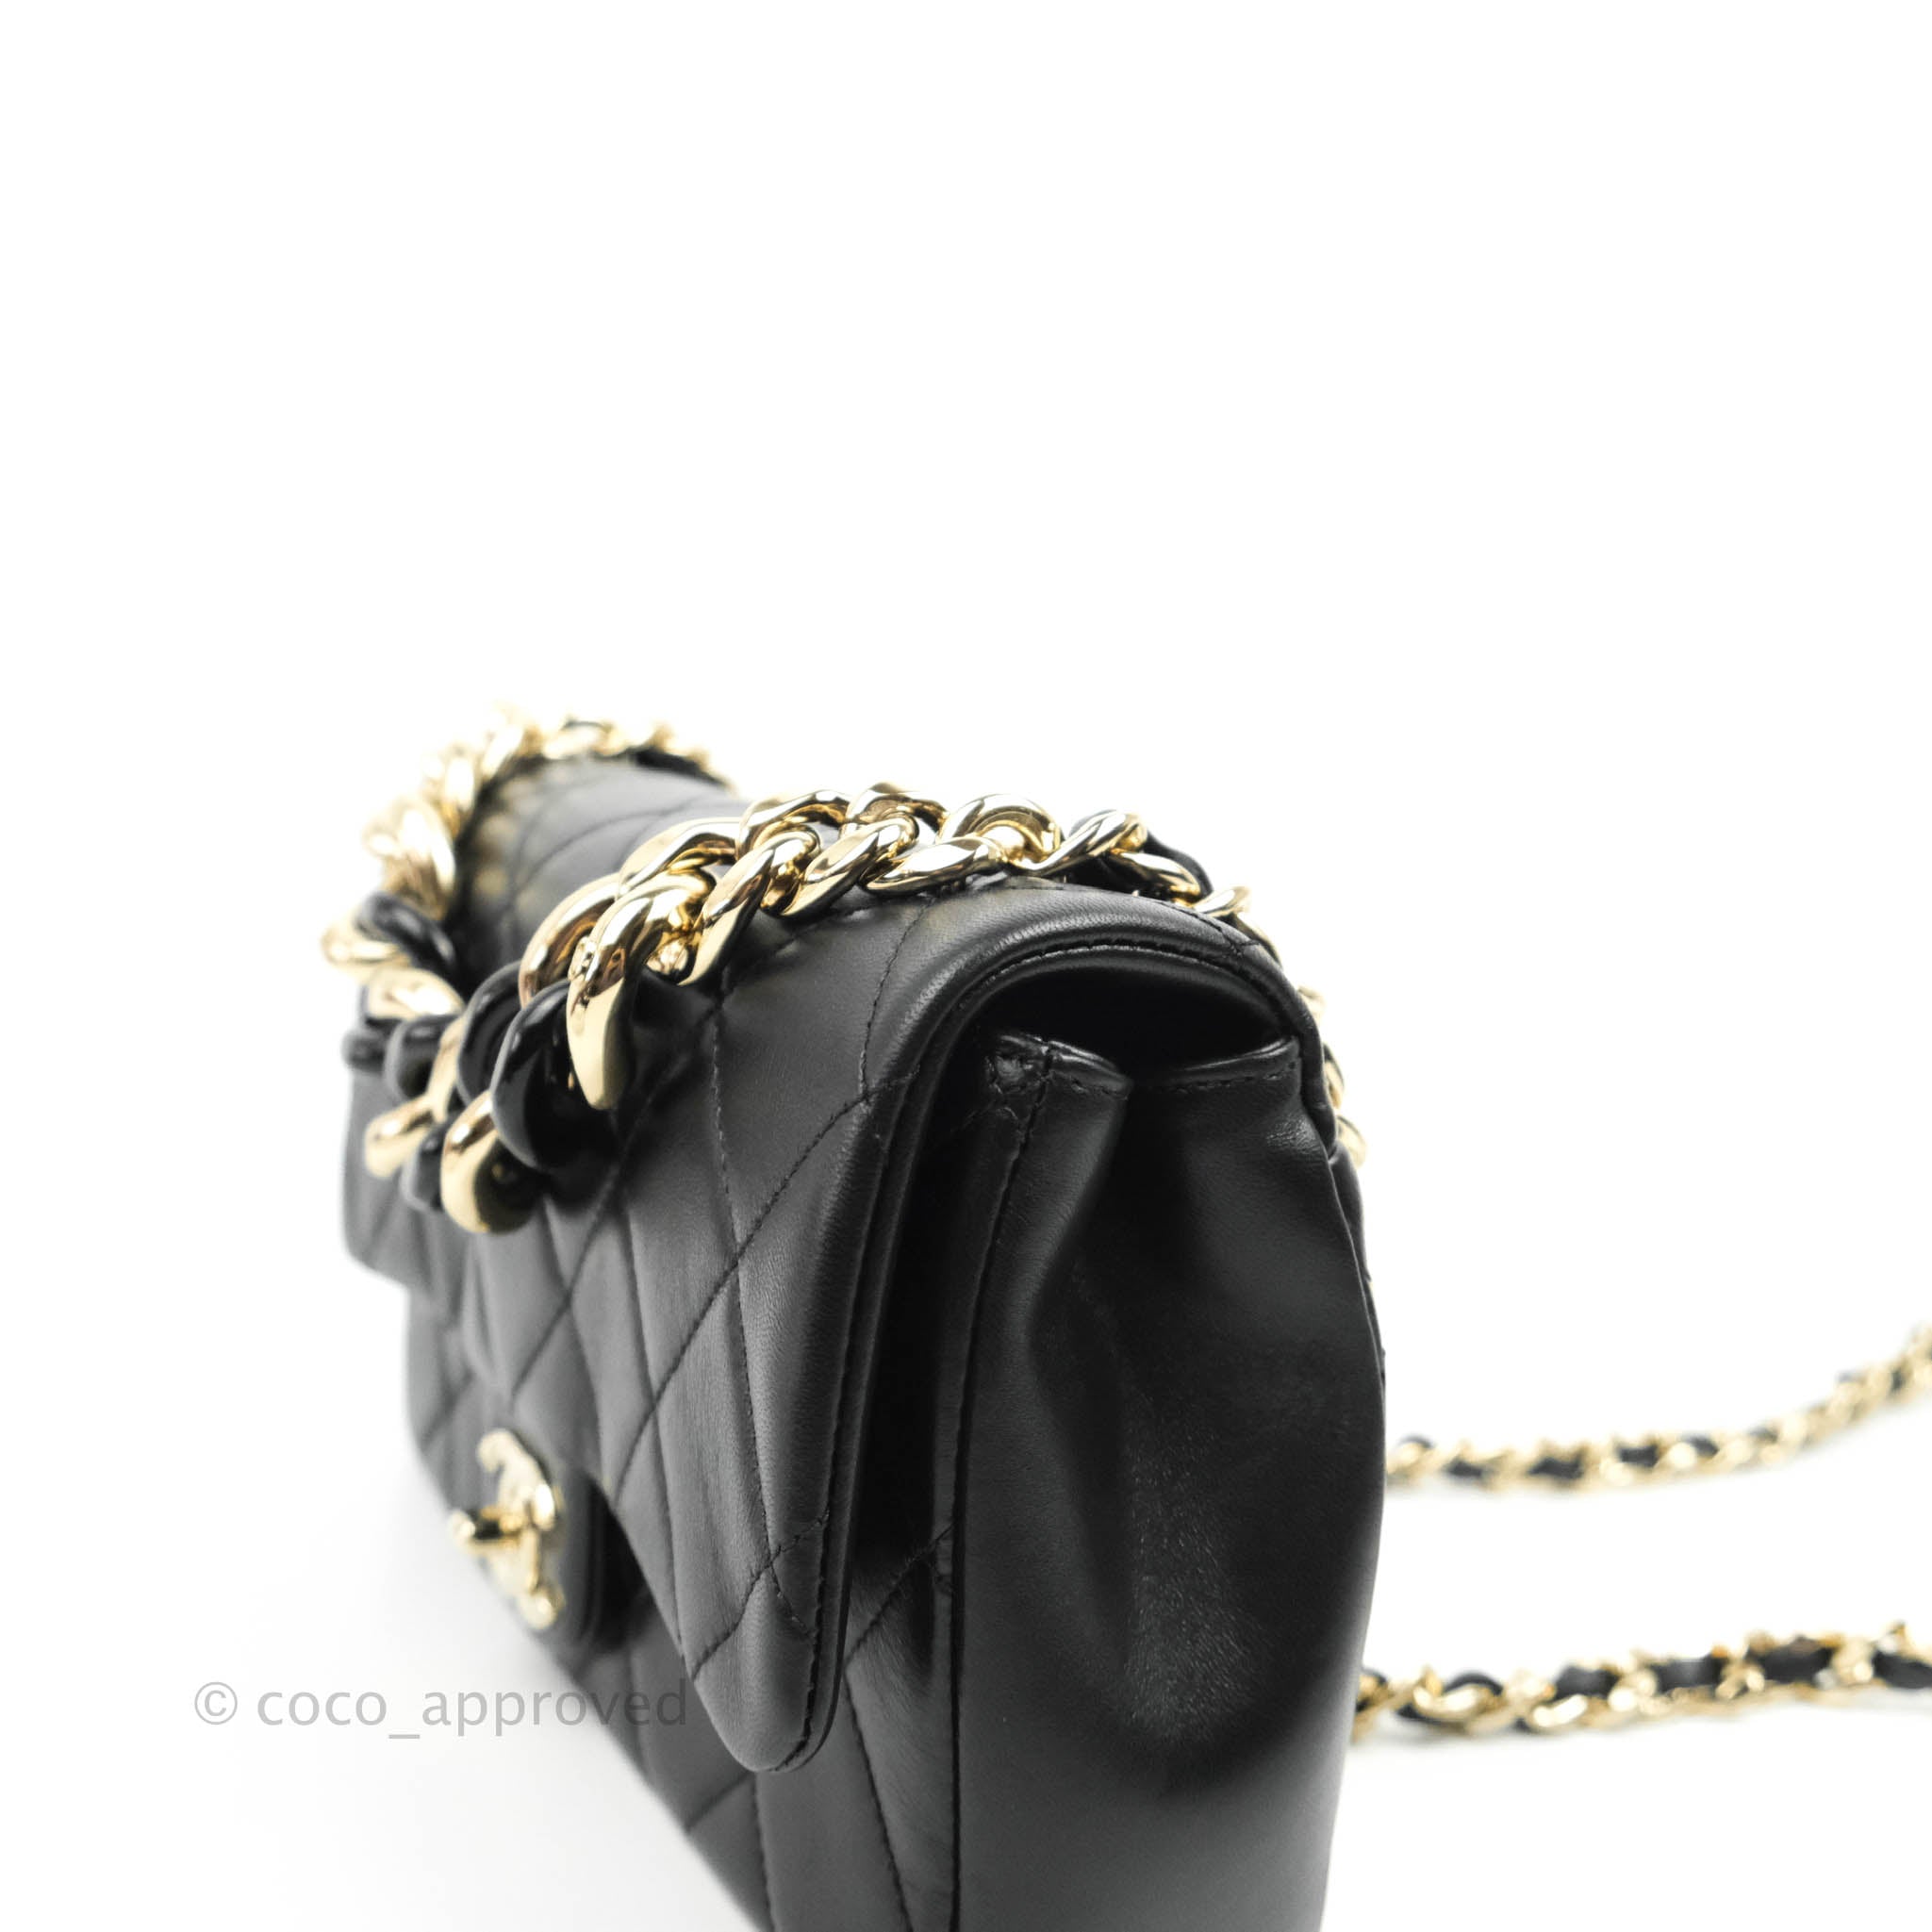 Shop authentic Chanel 2.55 Reissue 227 Double Flap Bag at revogue